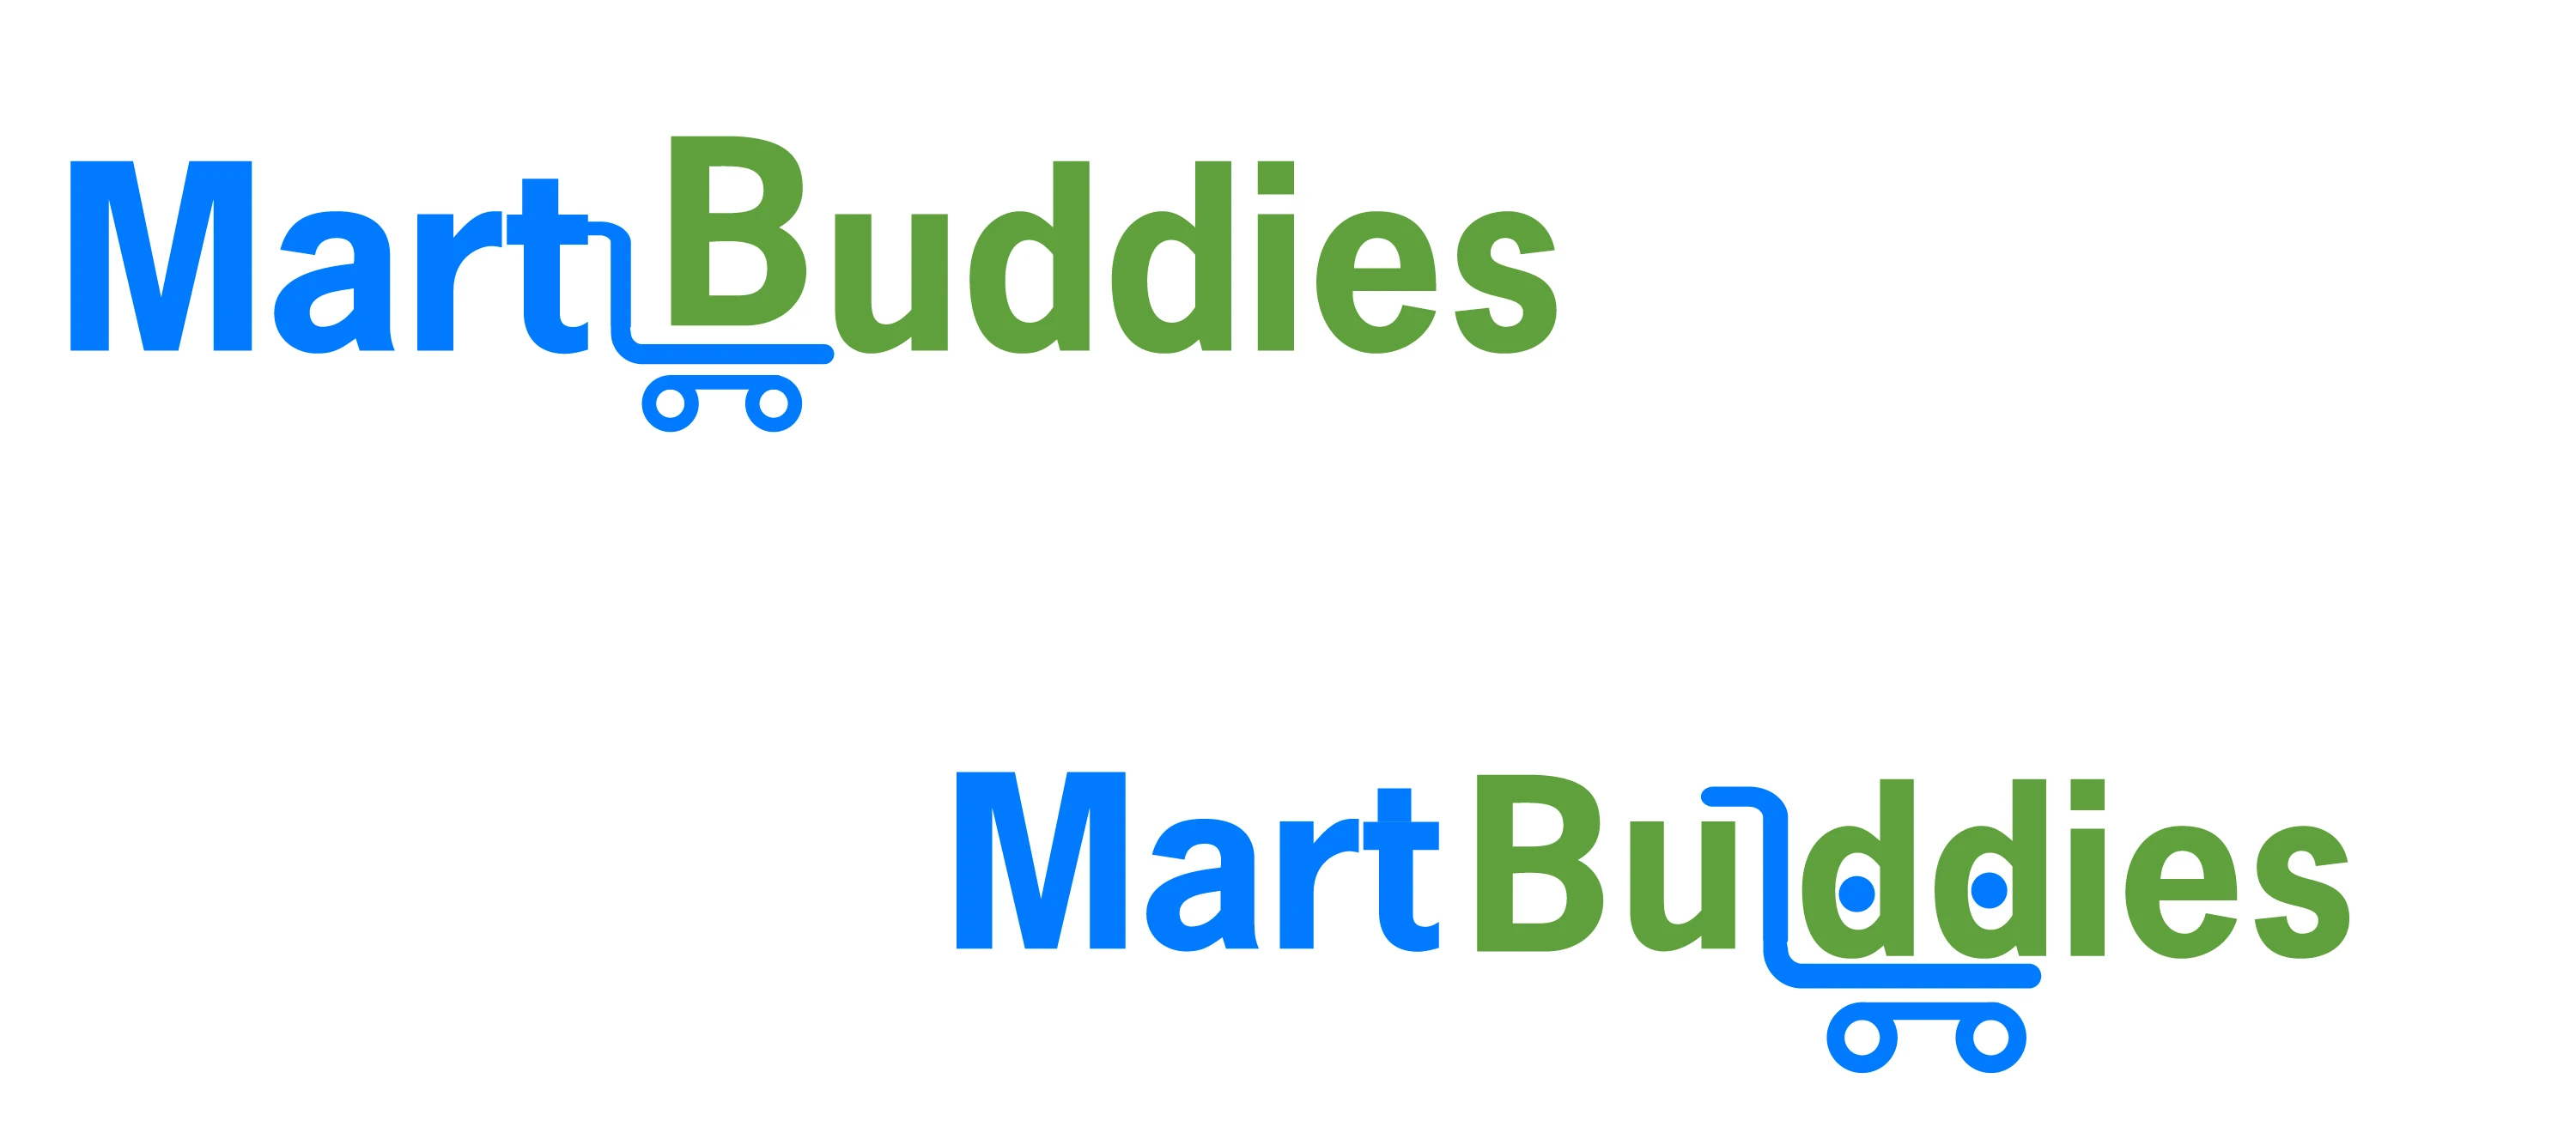 Mart Buddies